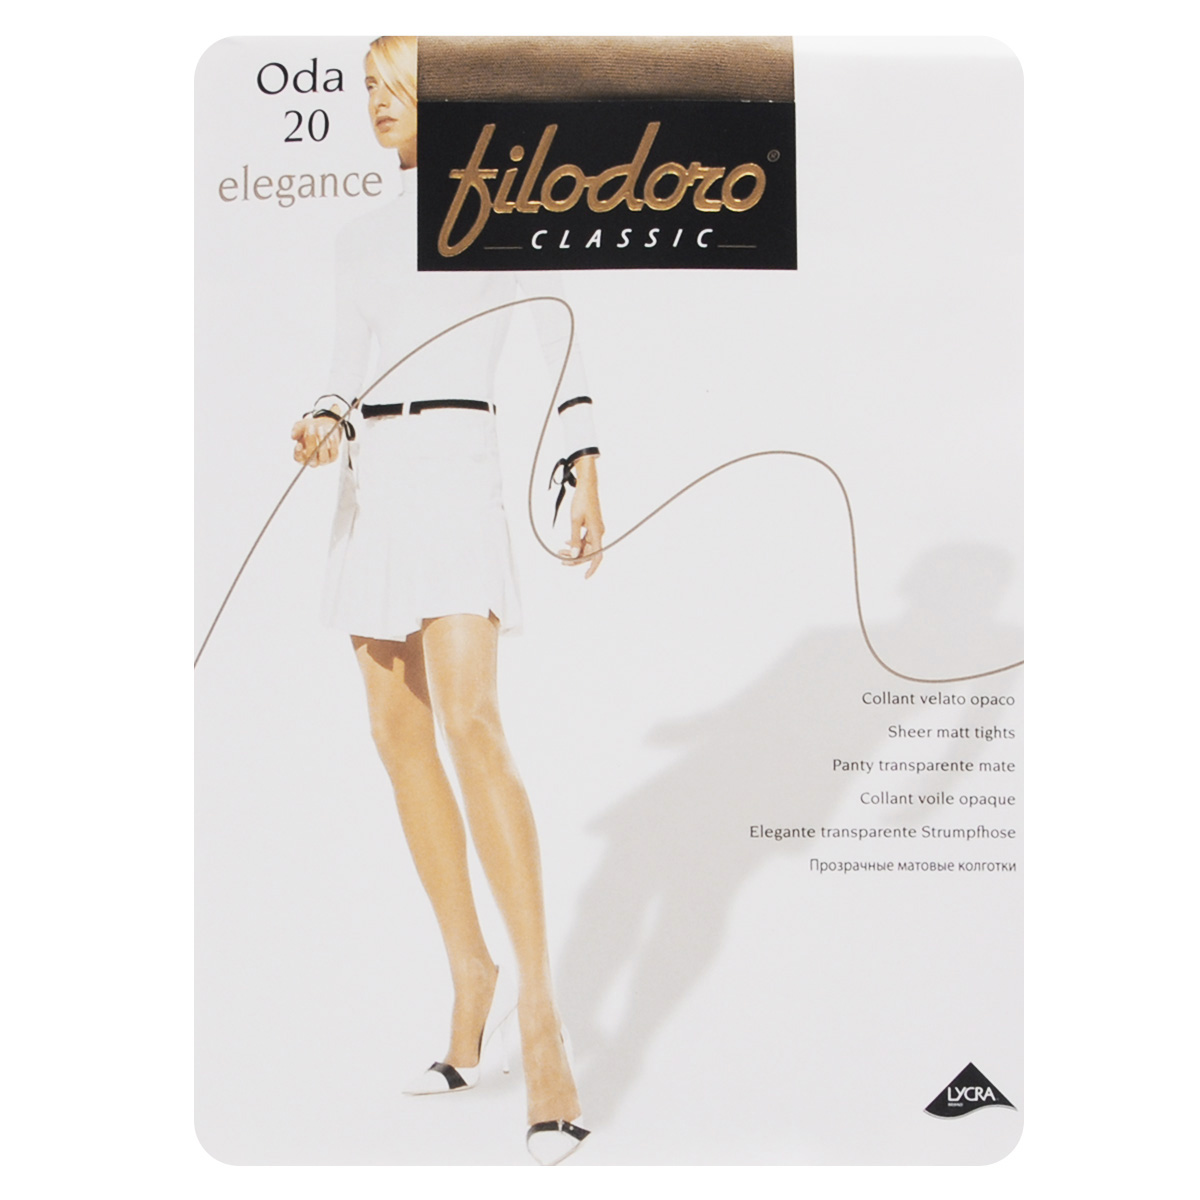 Колготки женские Filodoro Classic Oda 20 Elegance, цвет: Playa (телесный). SNL-151819. Размер 3 (M)